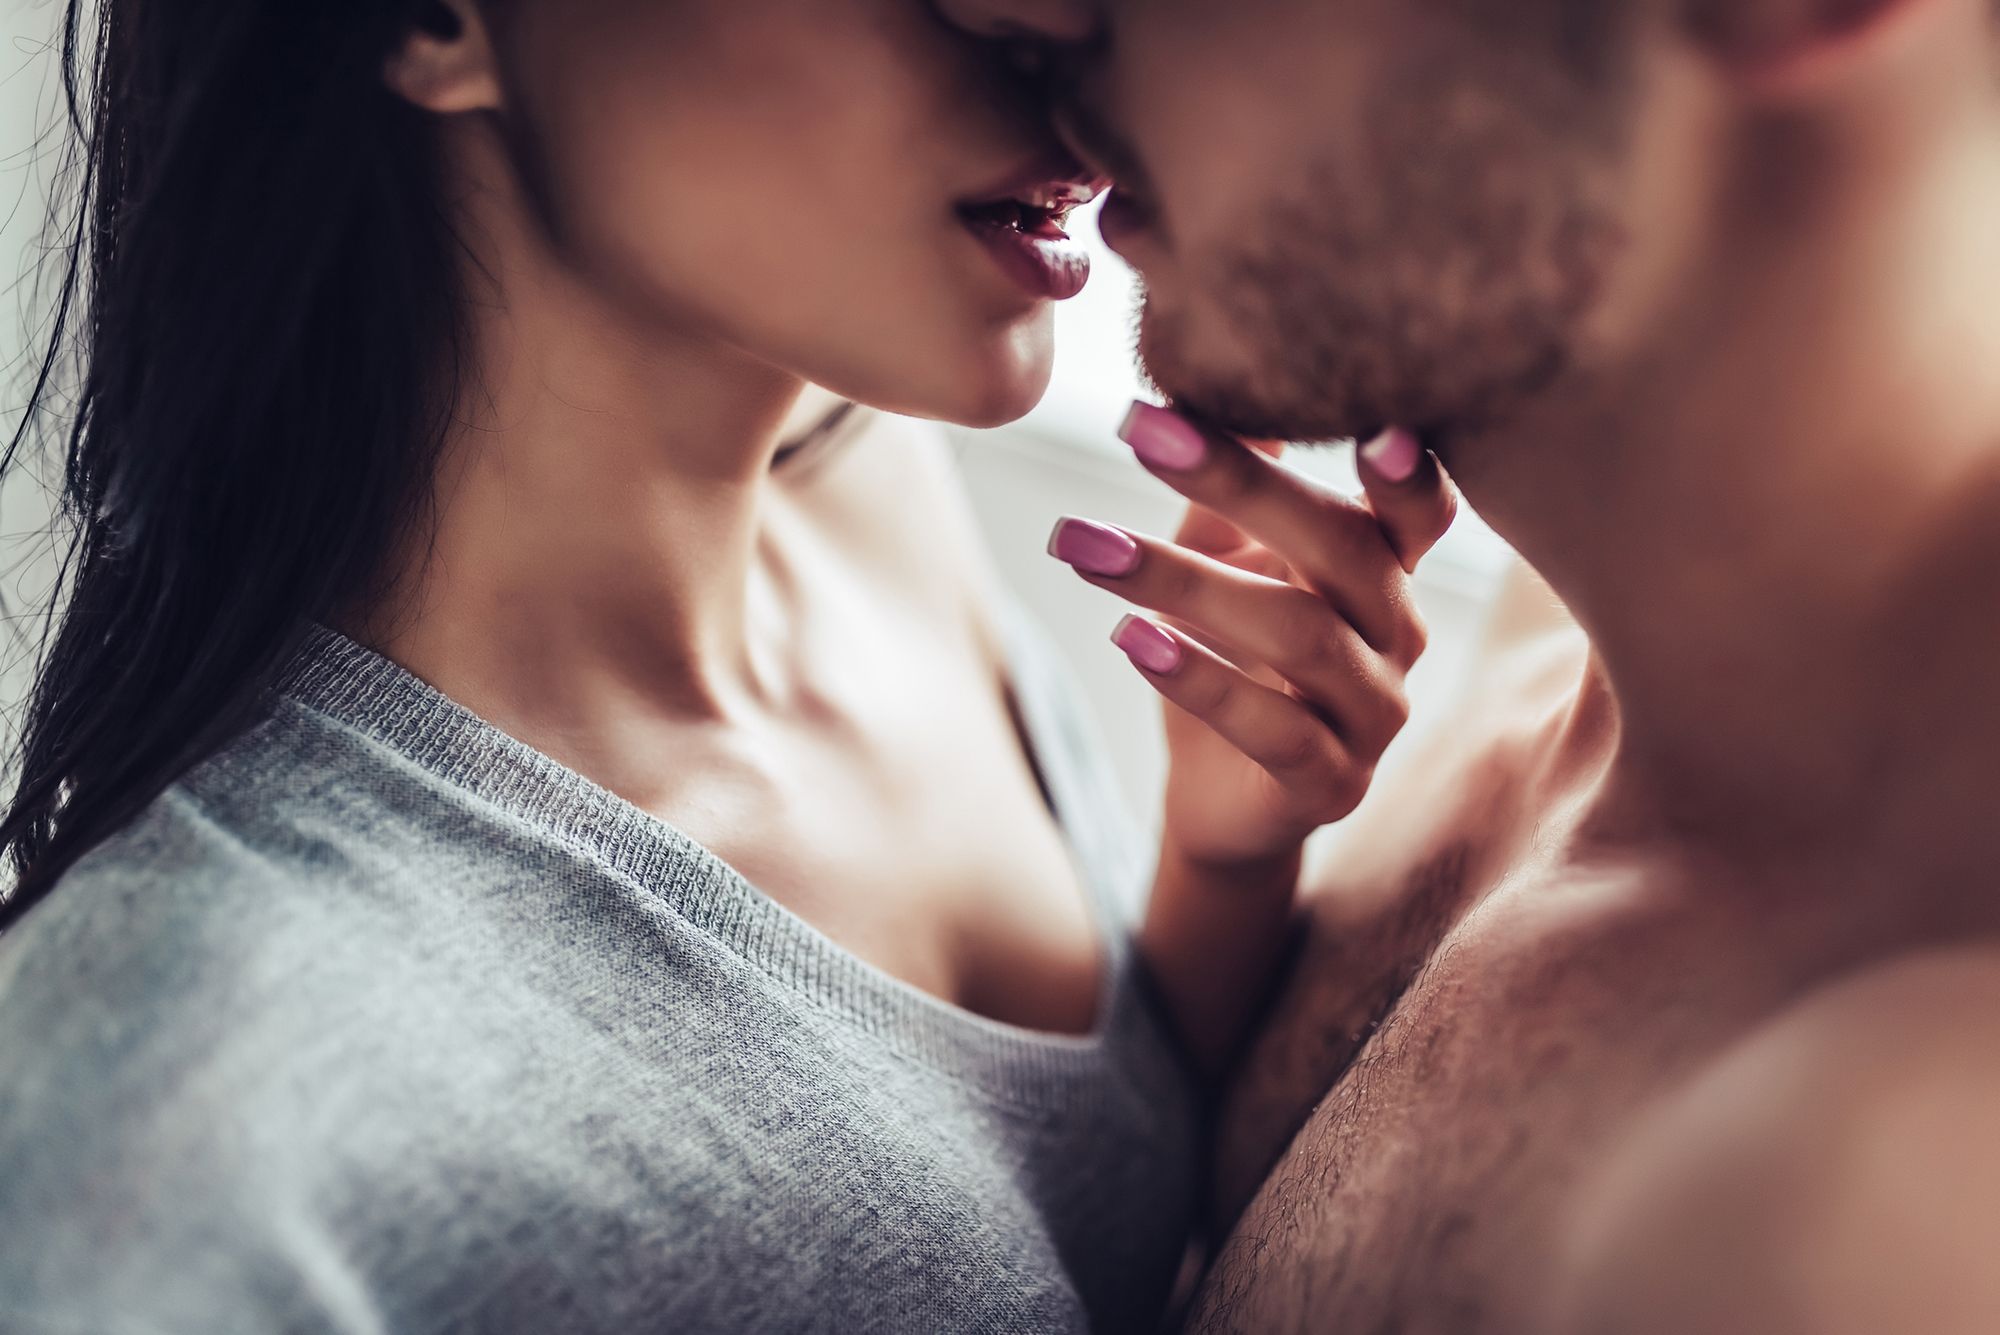 Schwarzhaarige Frau in grauem Shirt und mit pinken Fingernägeln und oberkörperfreier Mann, die sich sehr nahe kommen und beinahe küssen